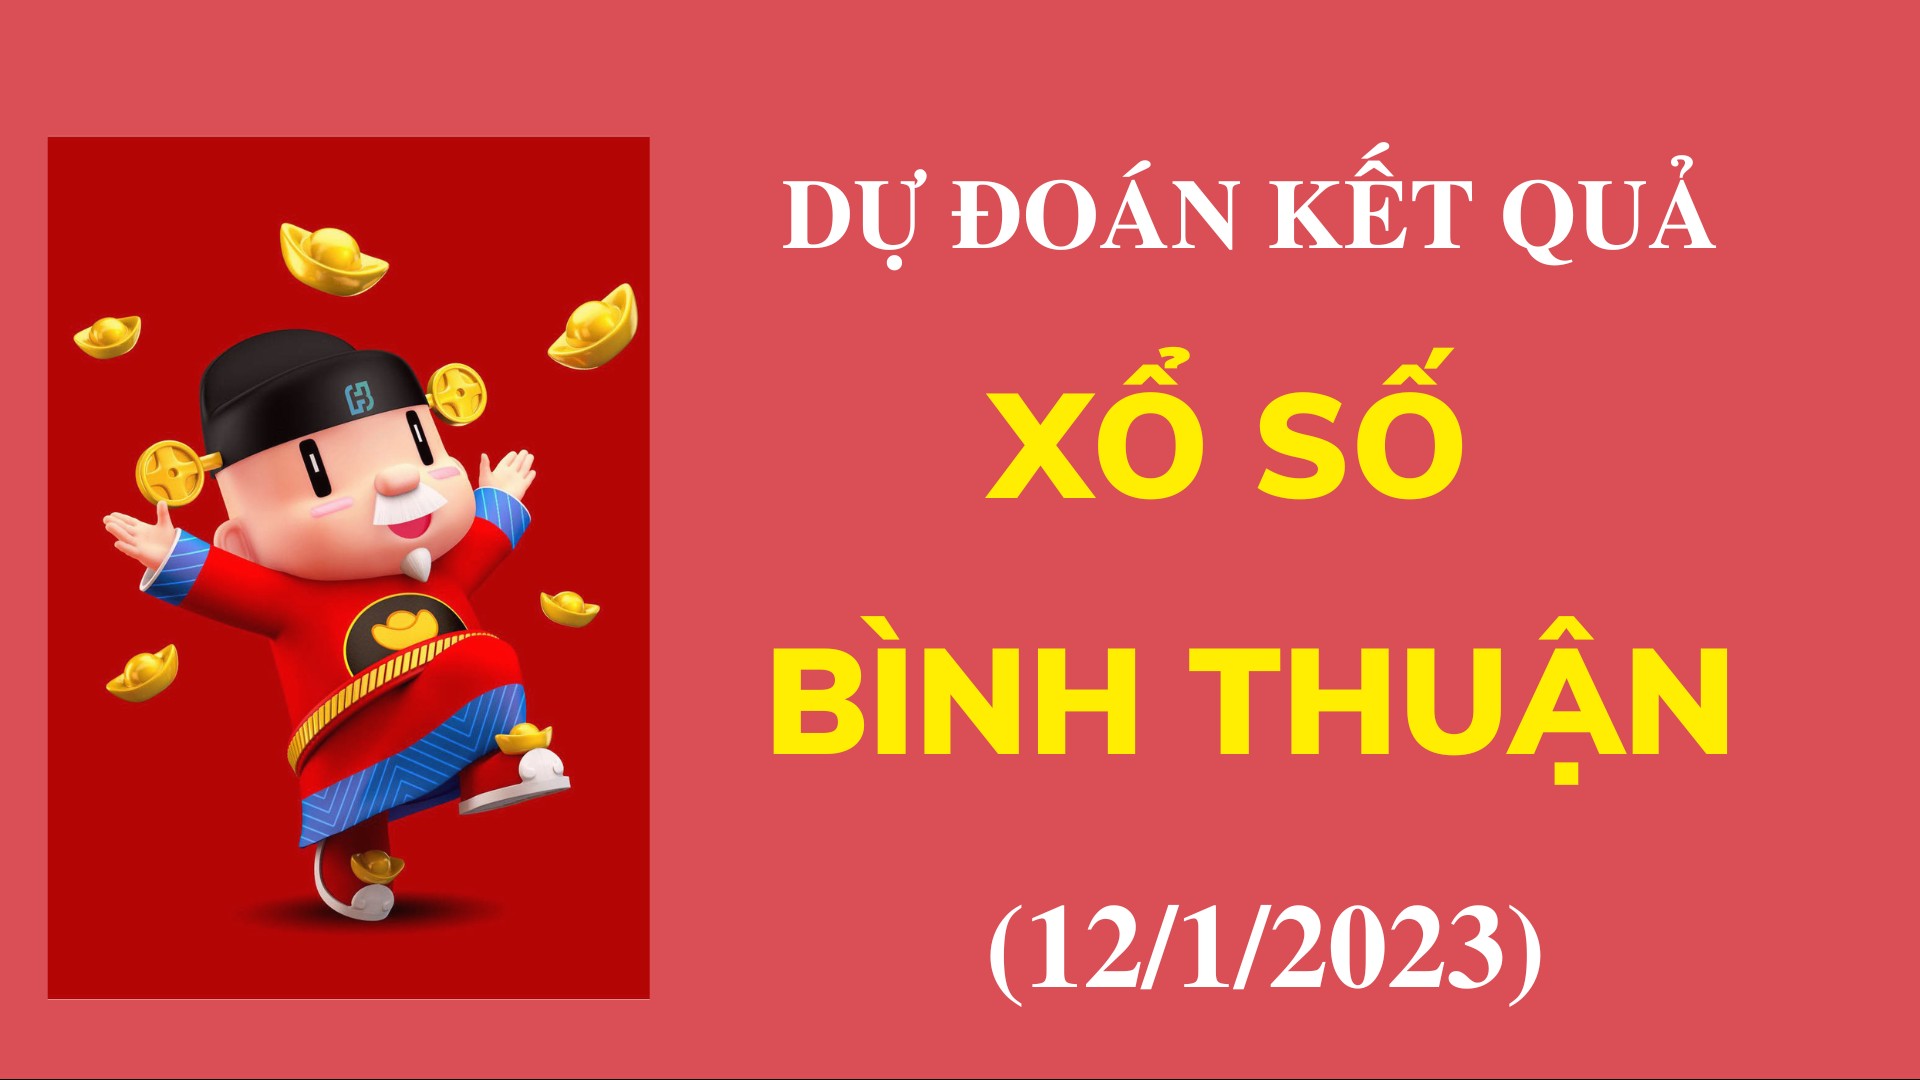 Dự đoán kết quả Xổ số Bình Thuận ngày 12/1/2022